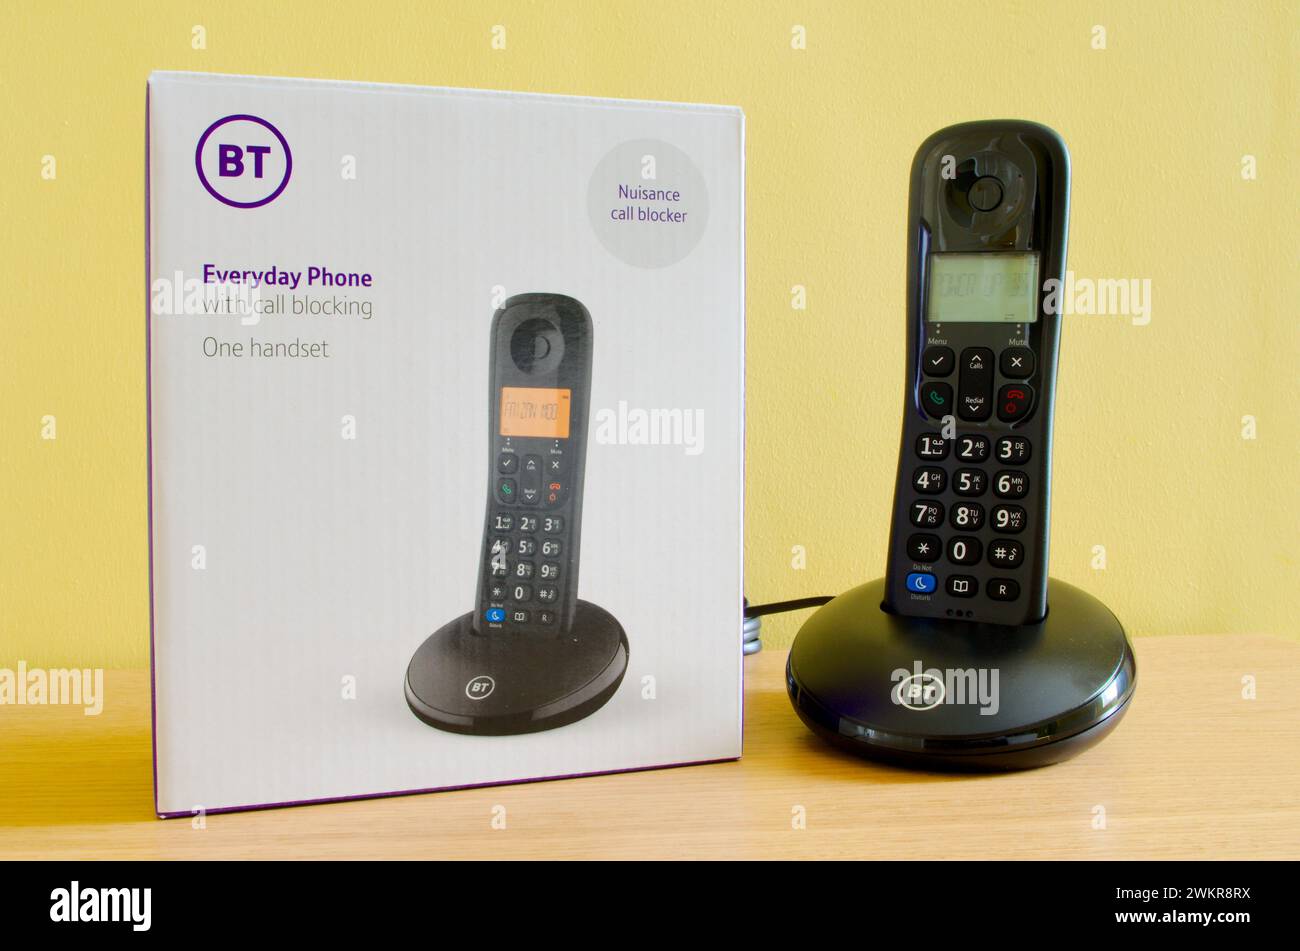 BT ou British Telecom Everyday Digital Cordless Phone avec blocage des appels, Royaume-Uni Banque D'Images